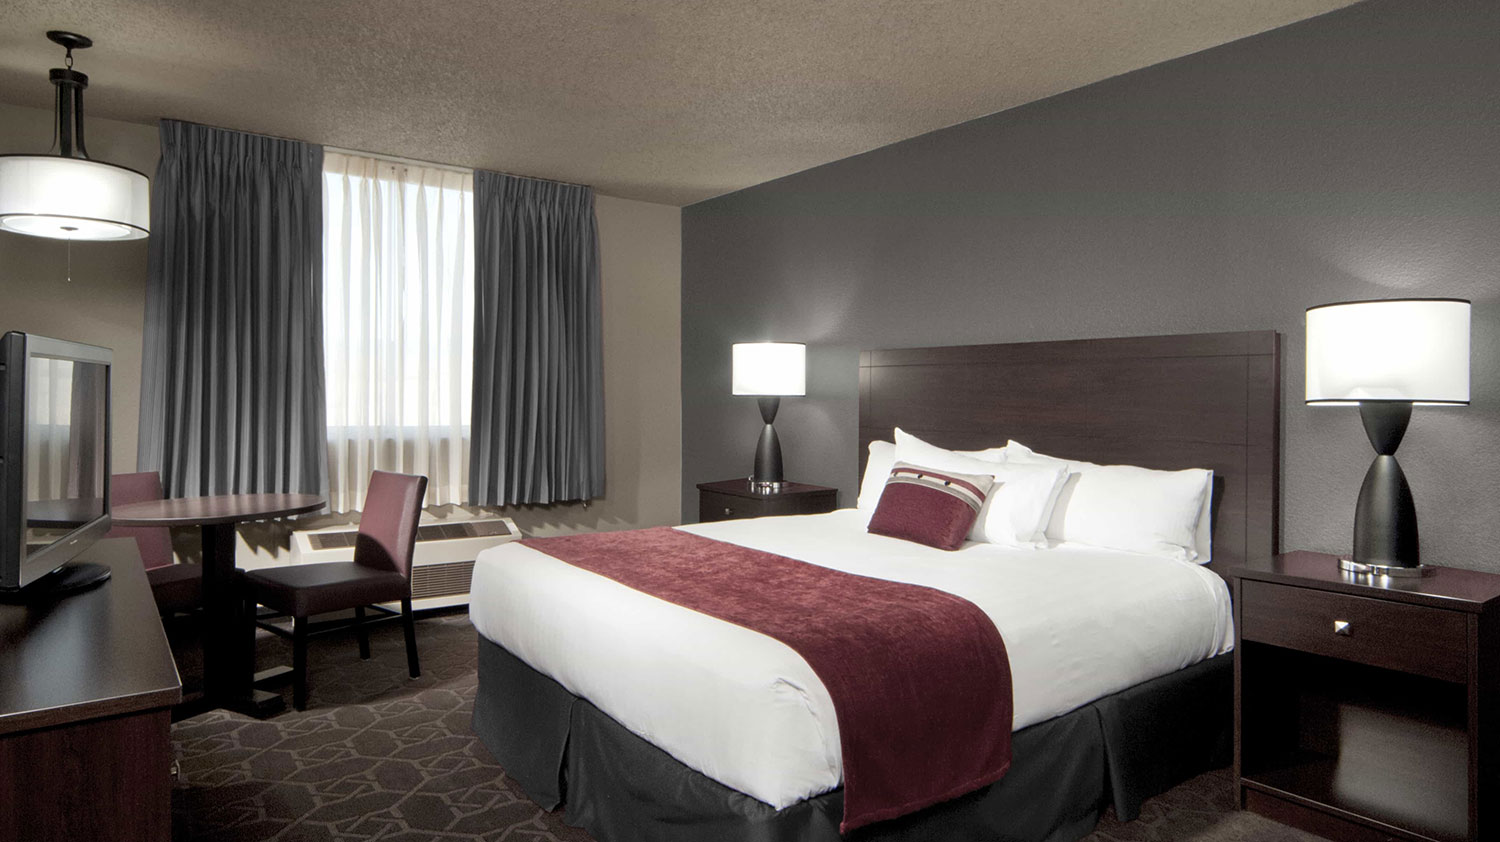 Accommodations at Edgewater Hotel & Casino Resort